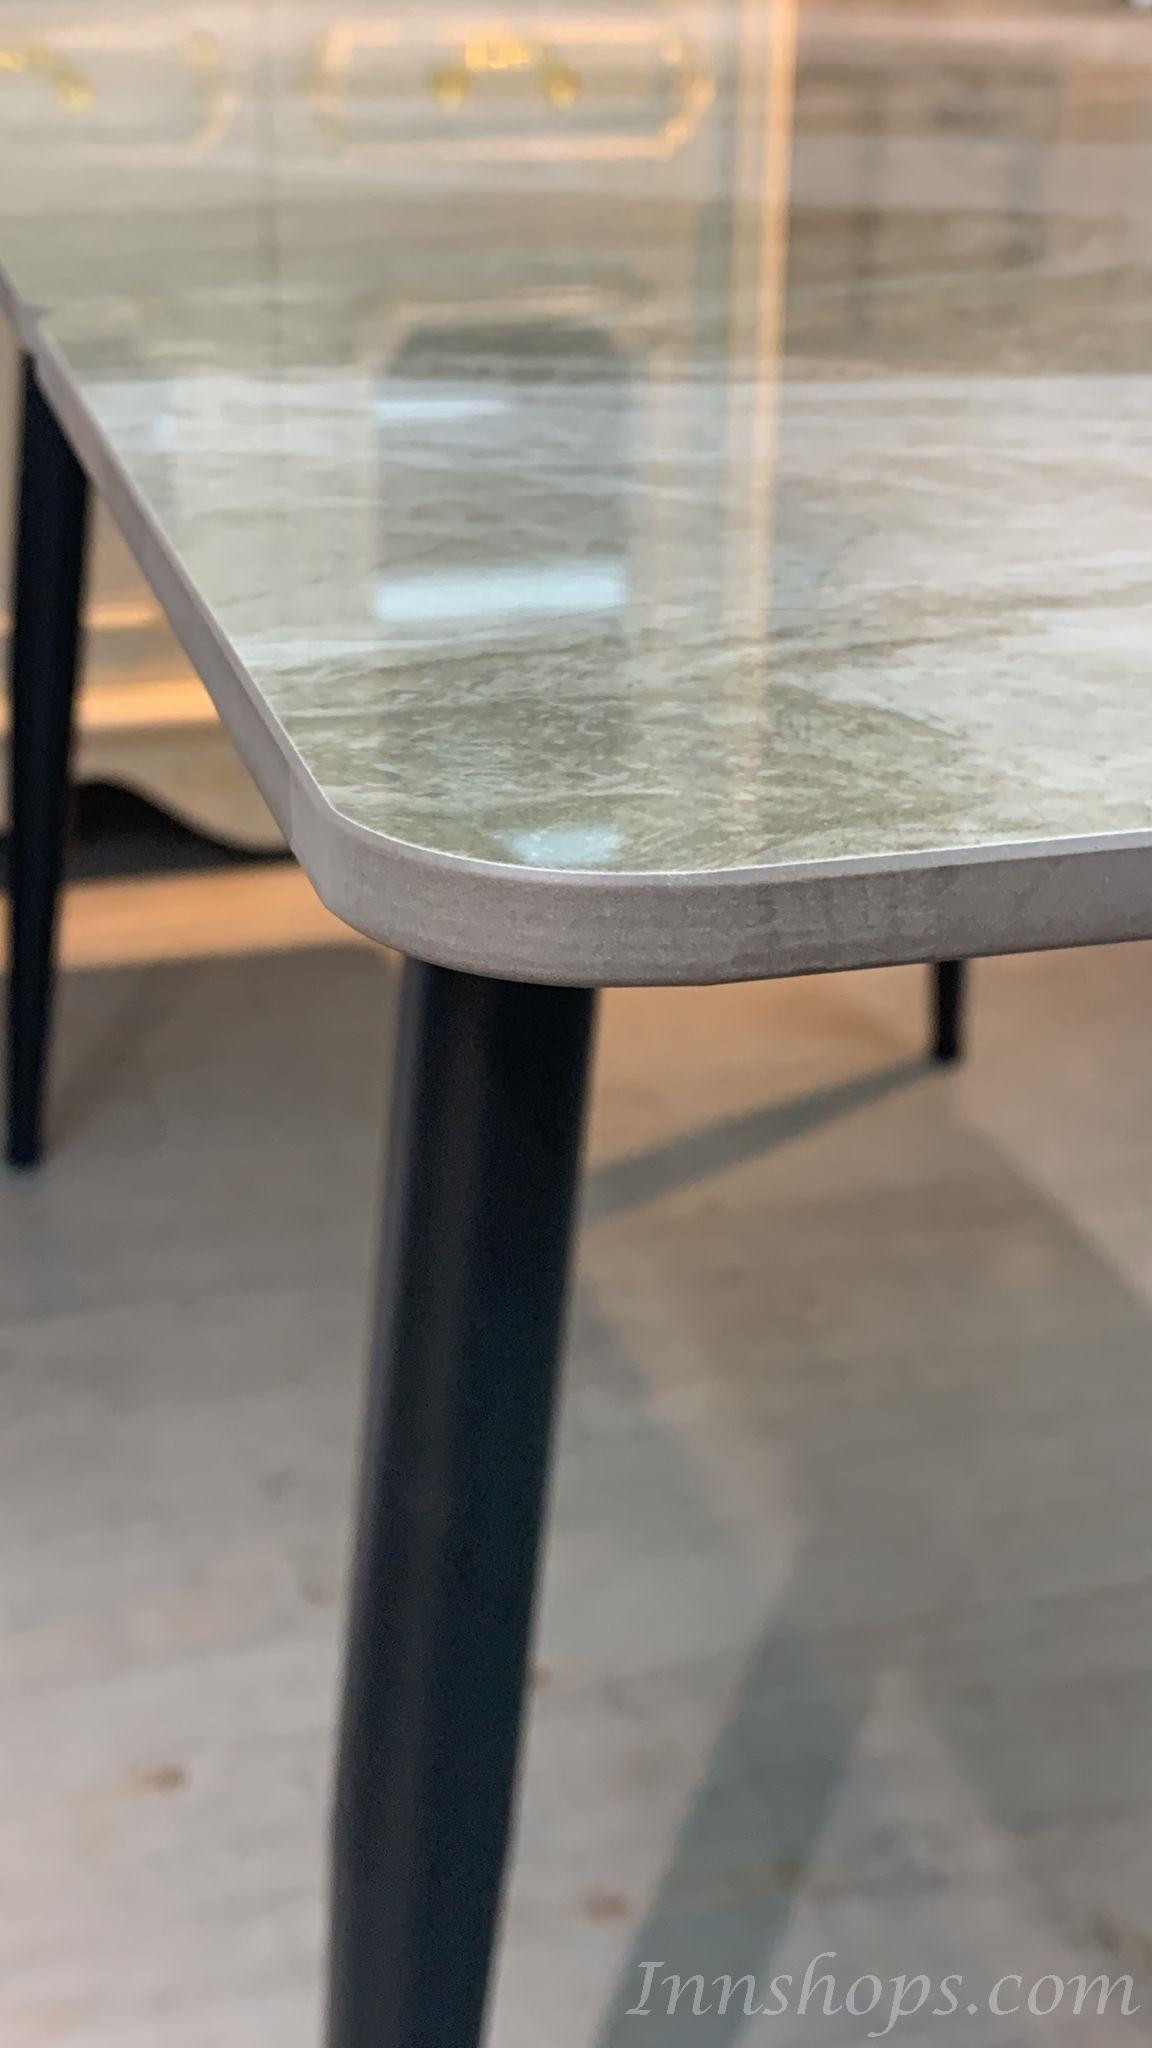 意式岩板長方形餐枱 兩邊可伸縮 餐桌 100/120/140cm (IS8633)